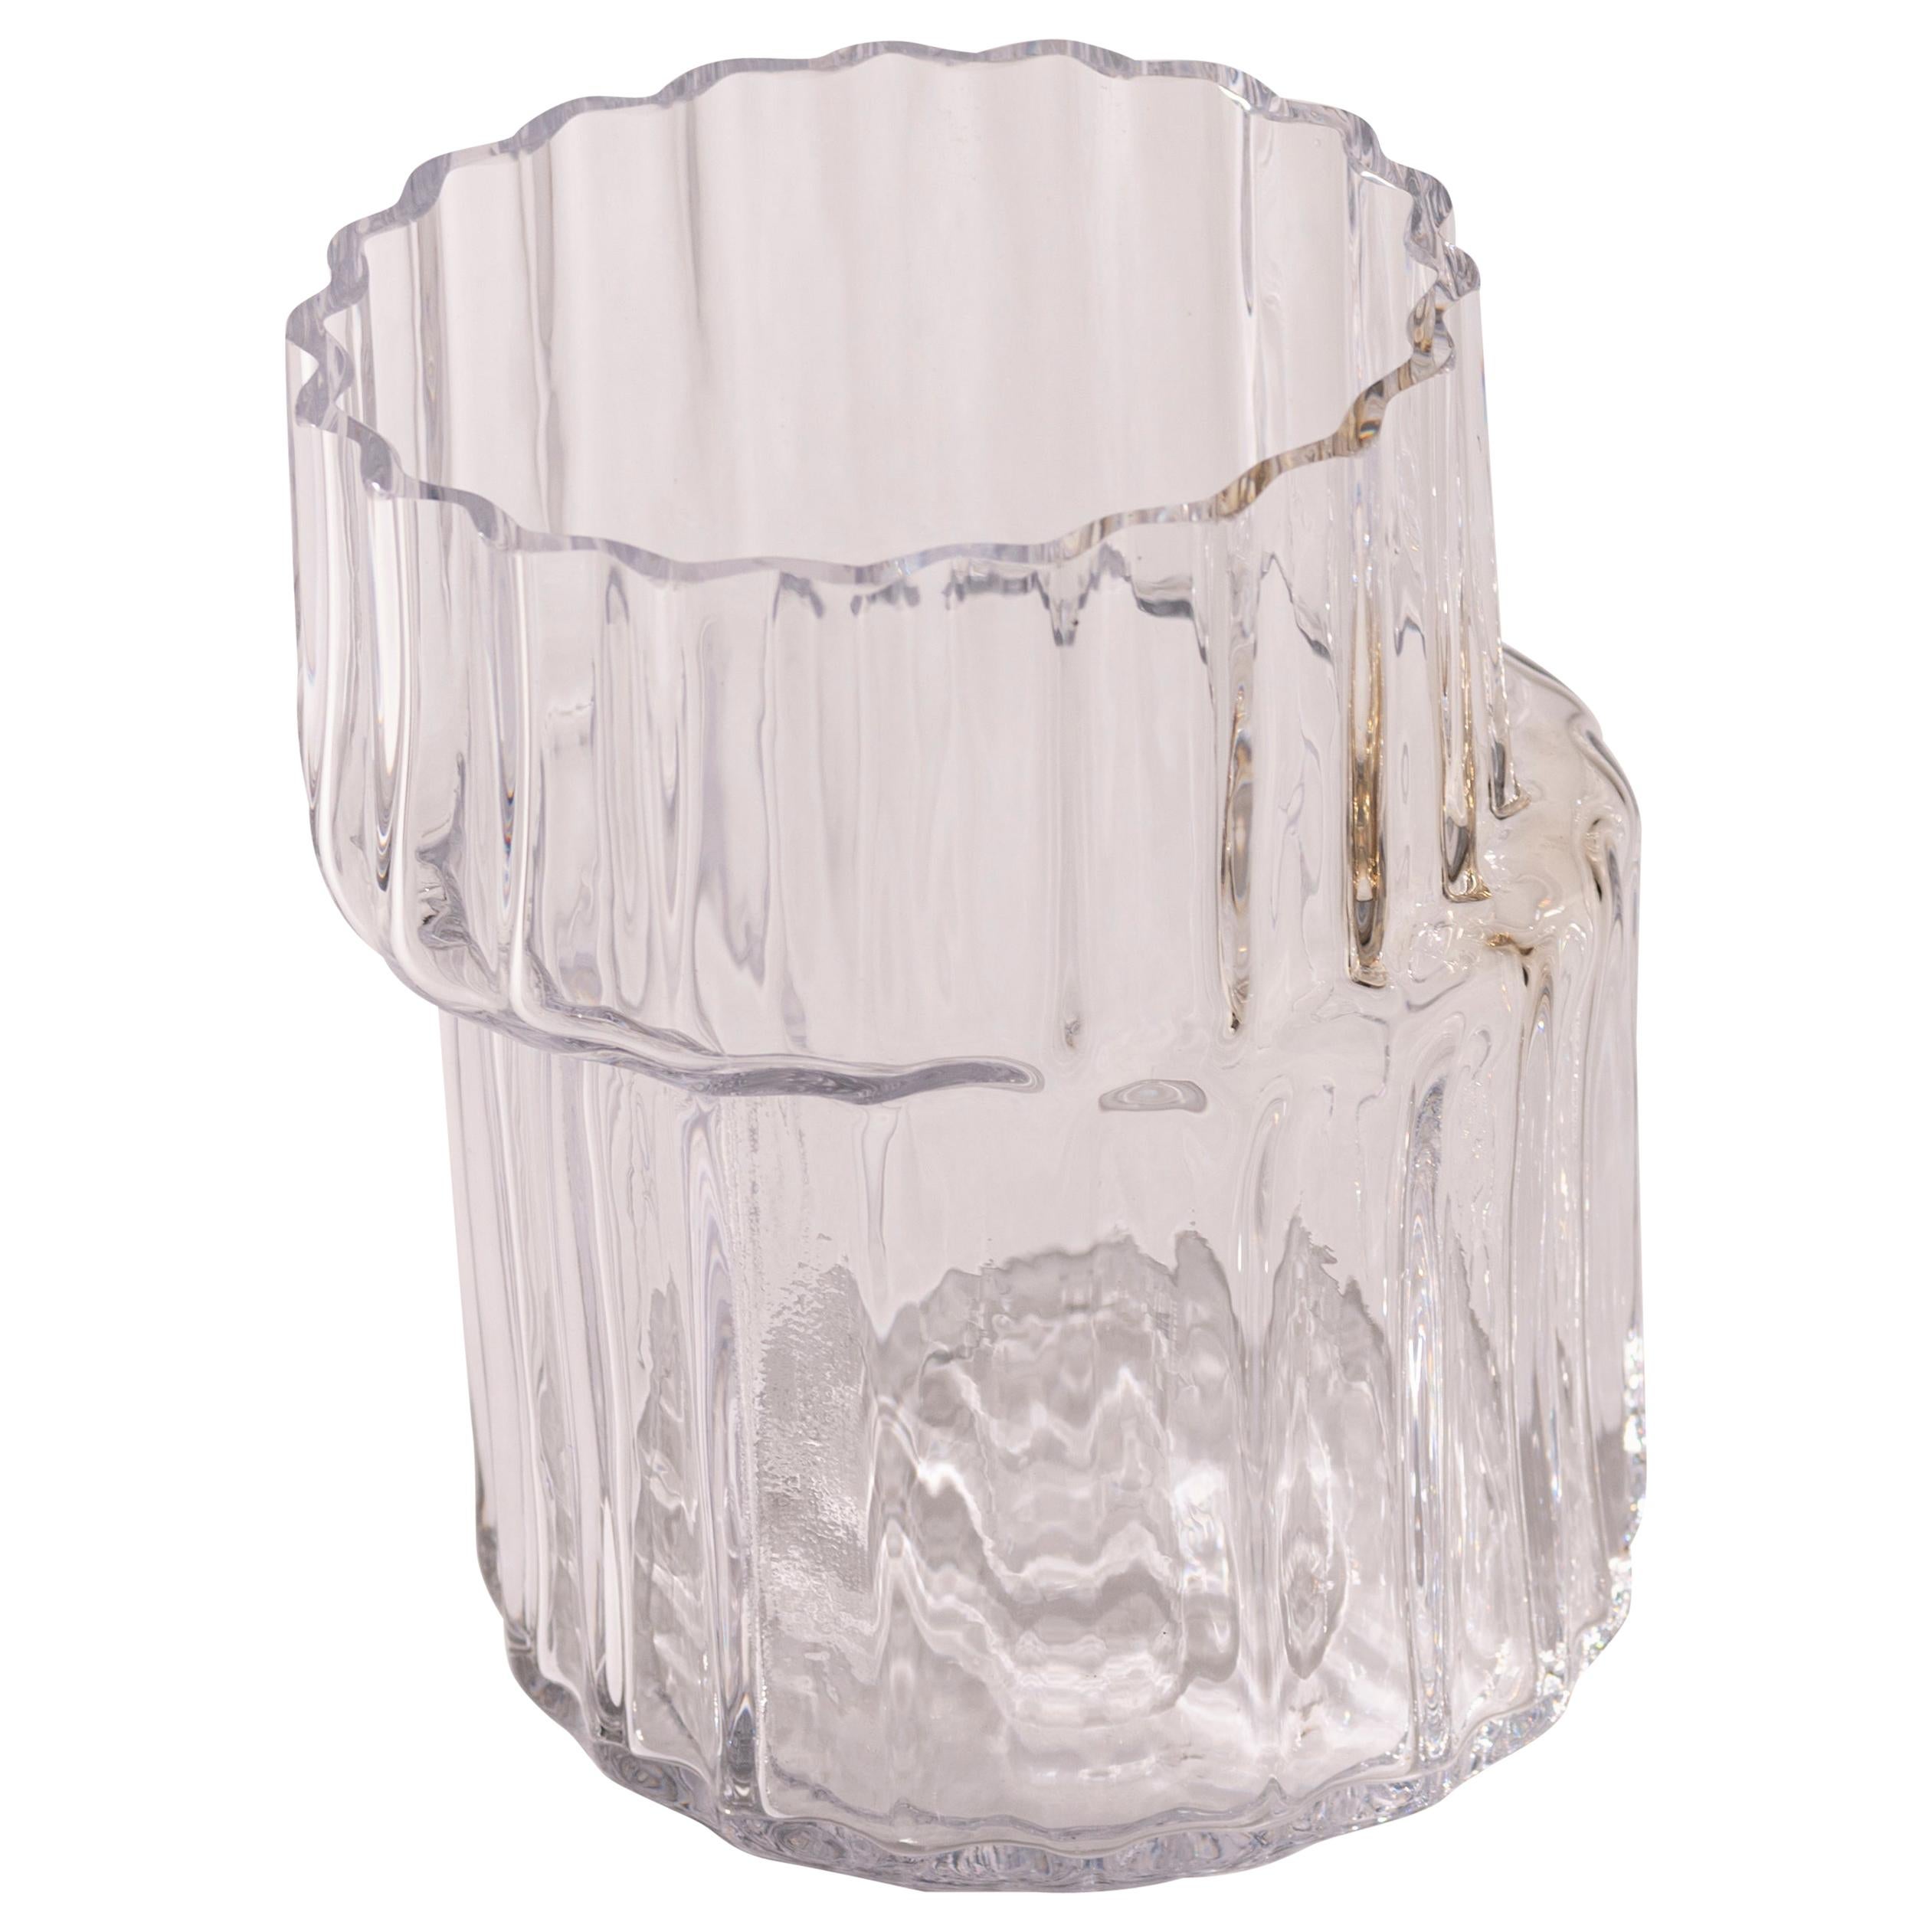 Silice Vase, Blown Glass, Unique 18